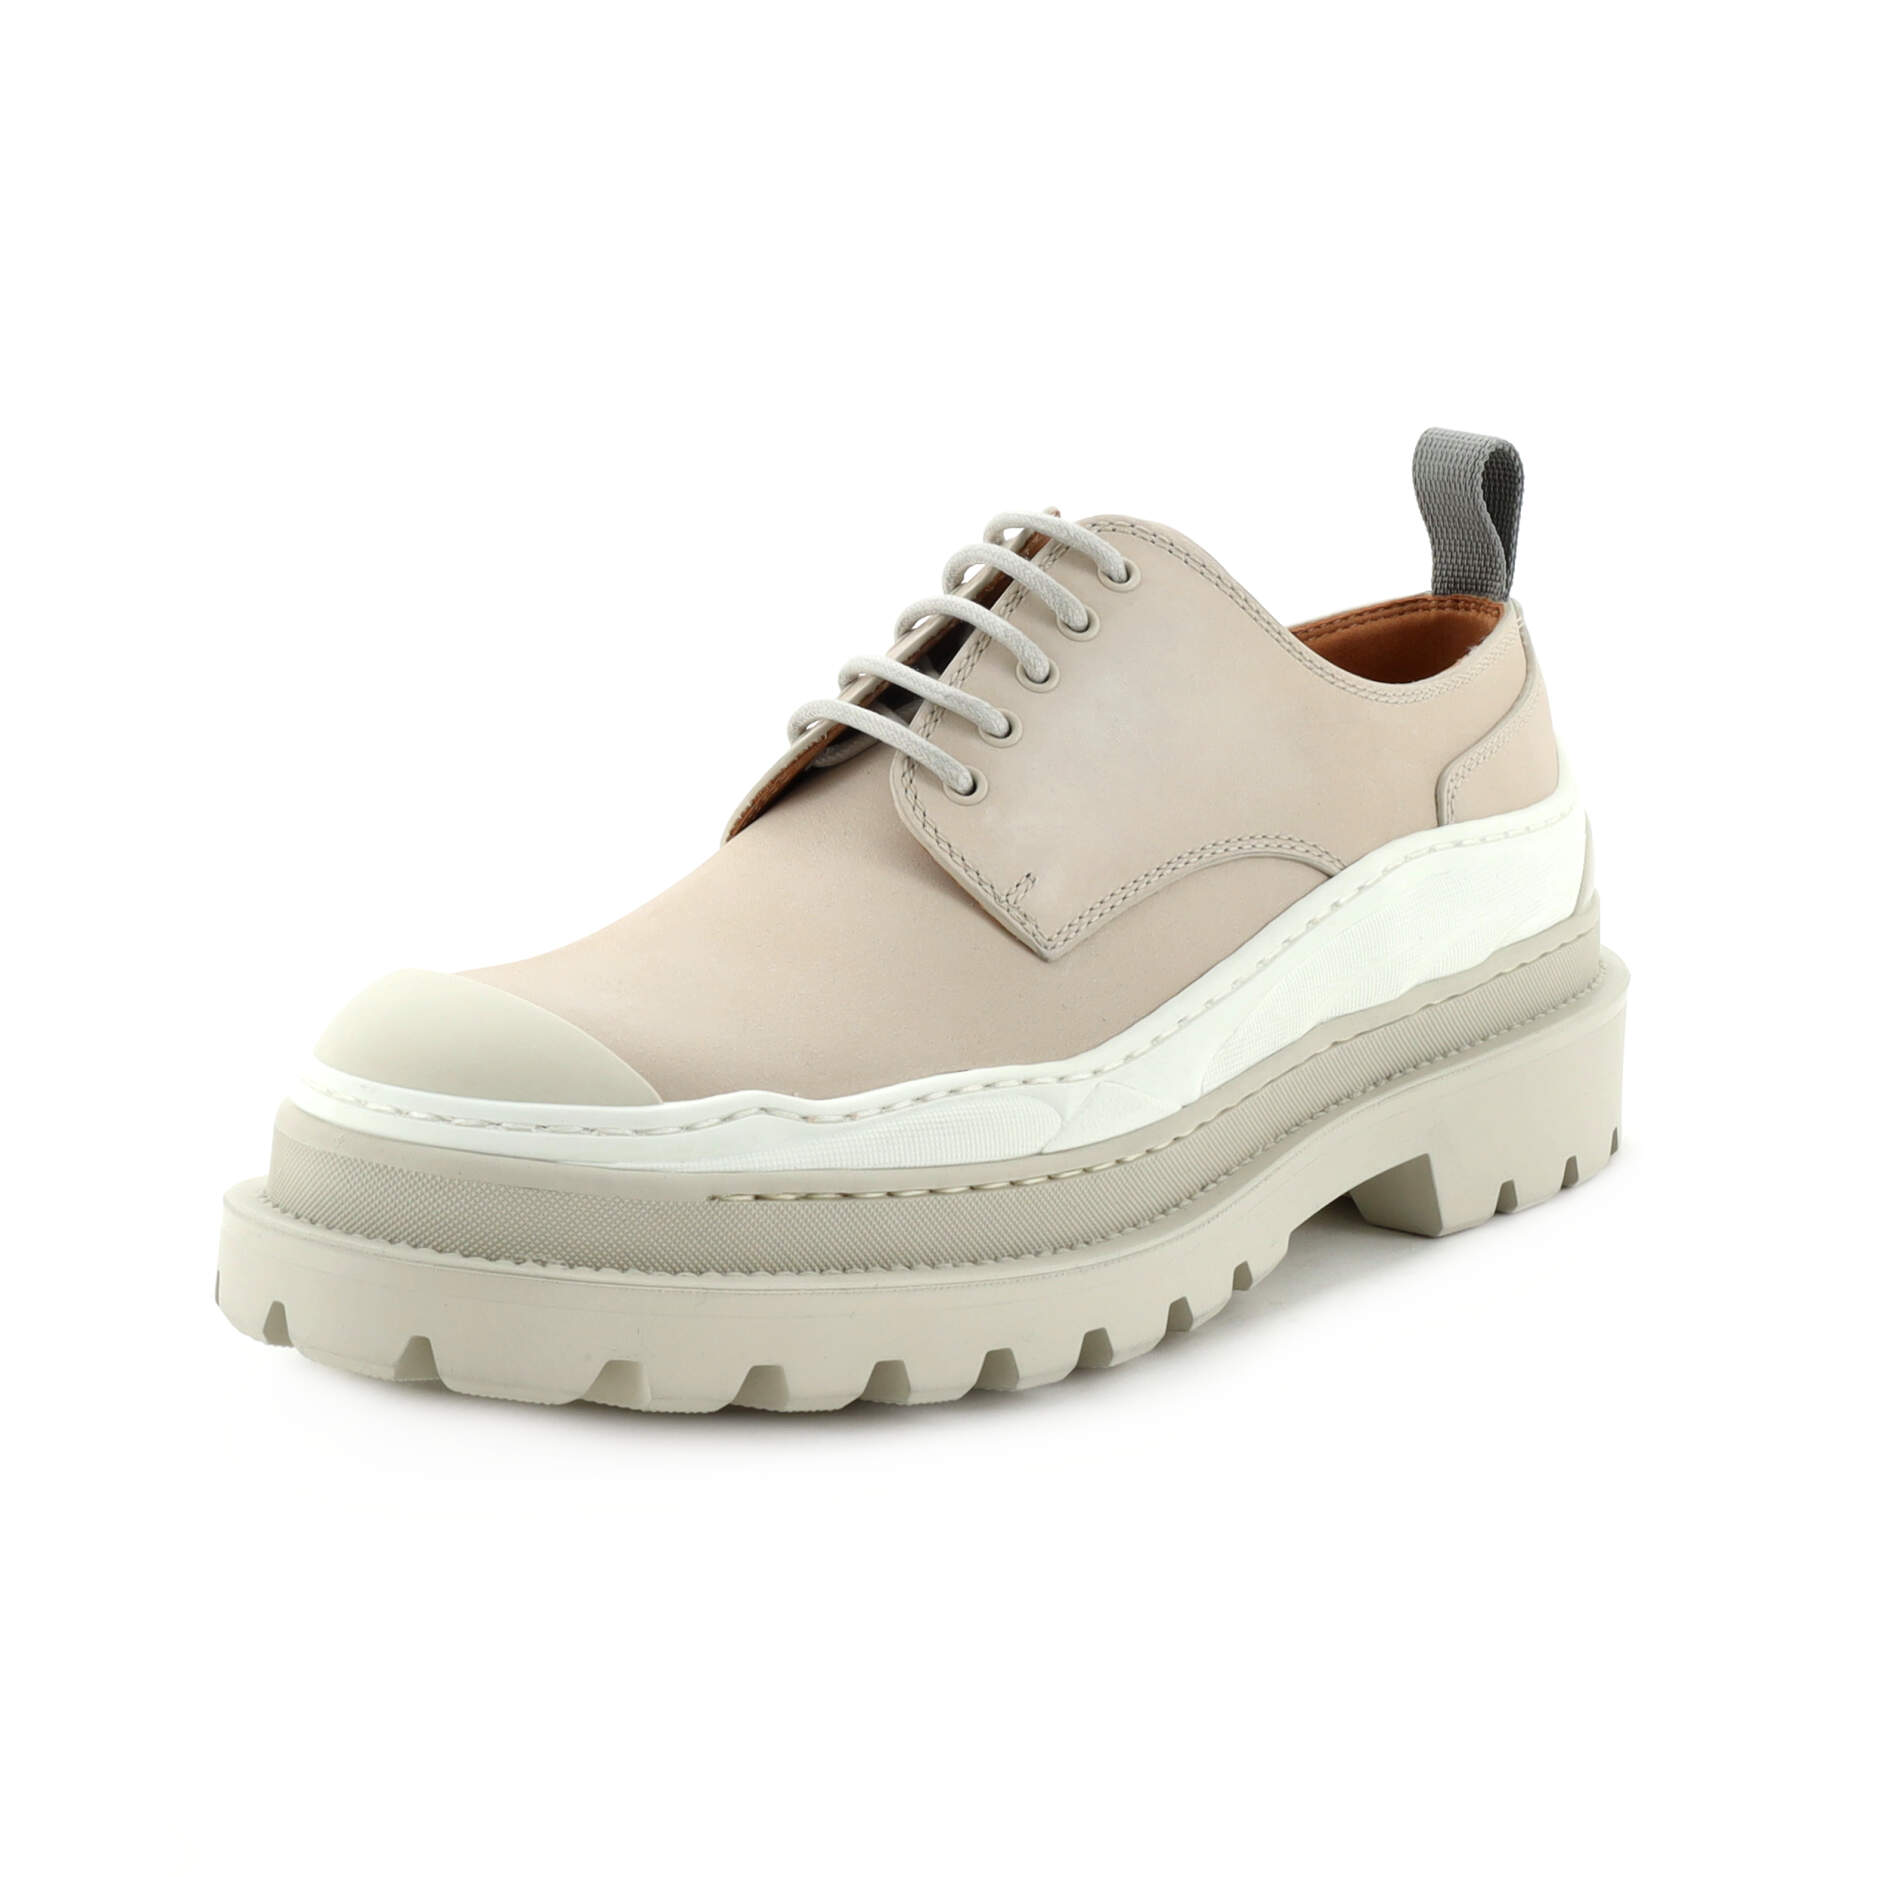 x Sacai Men's Platform Derby Shoes Leather